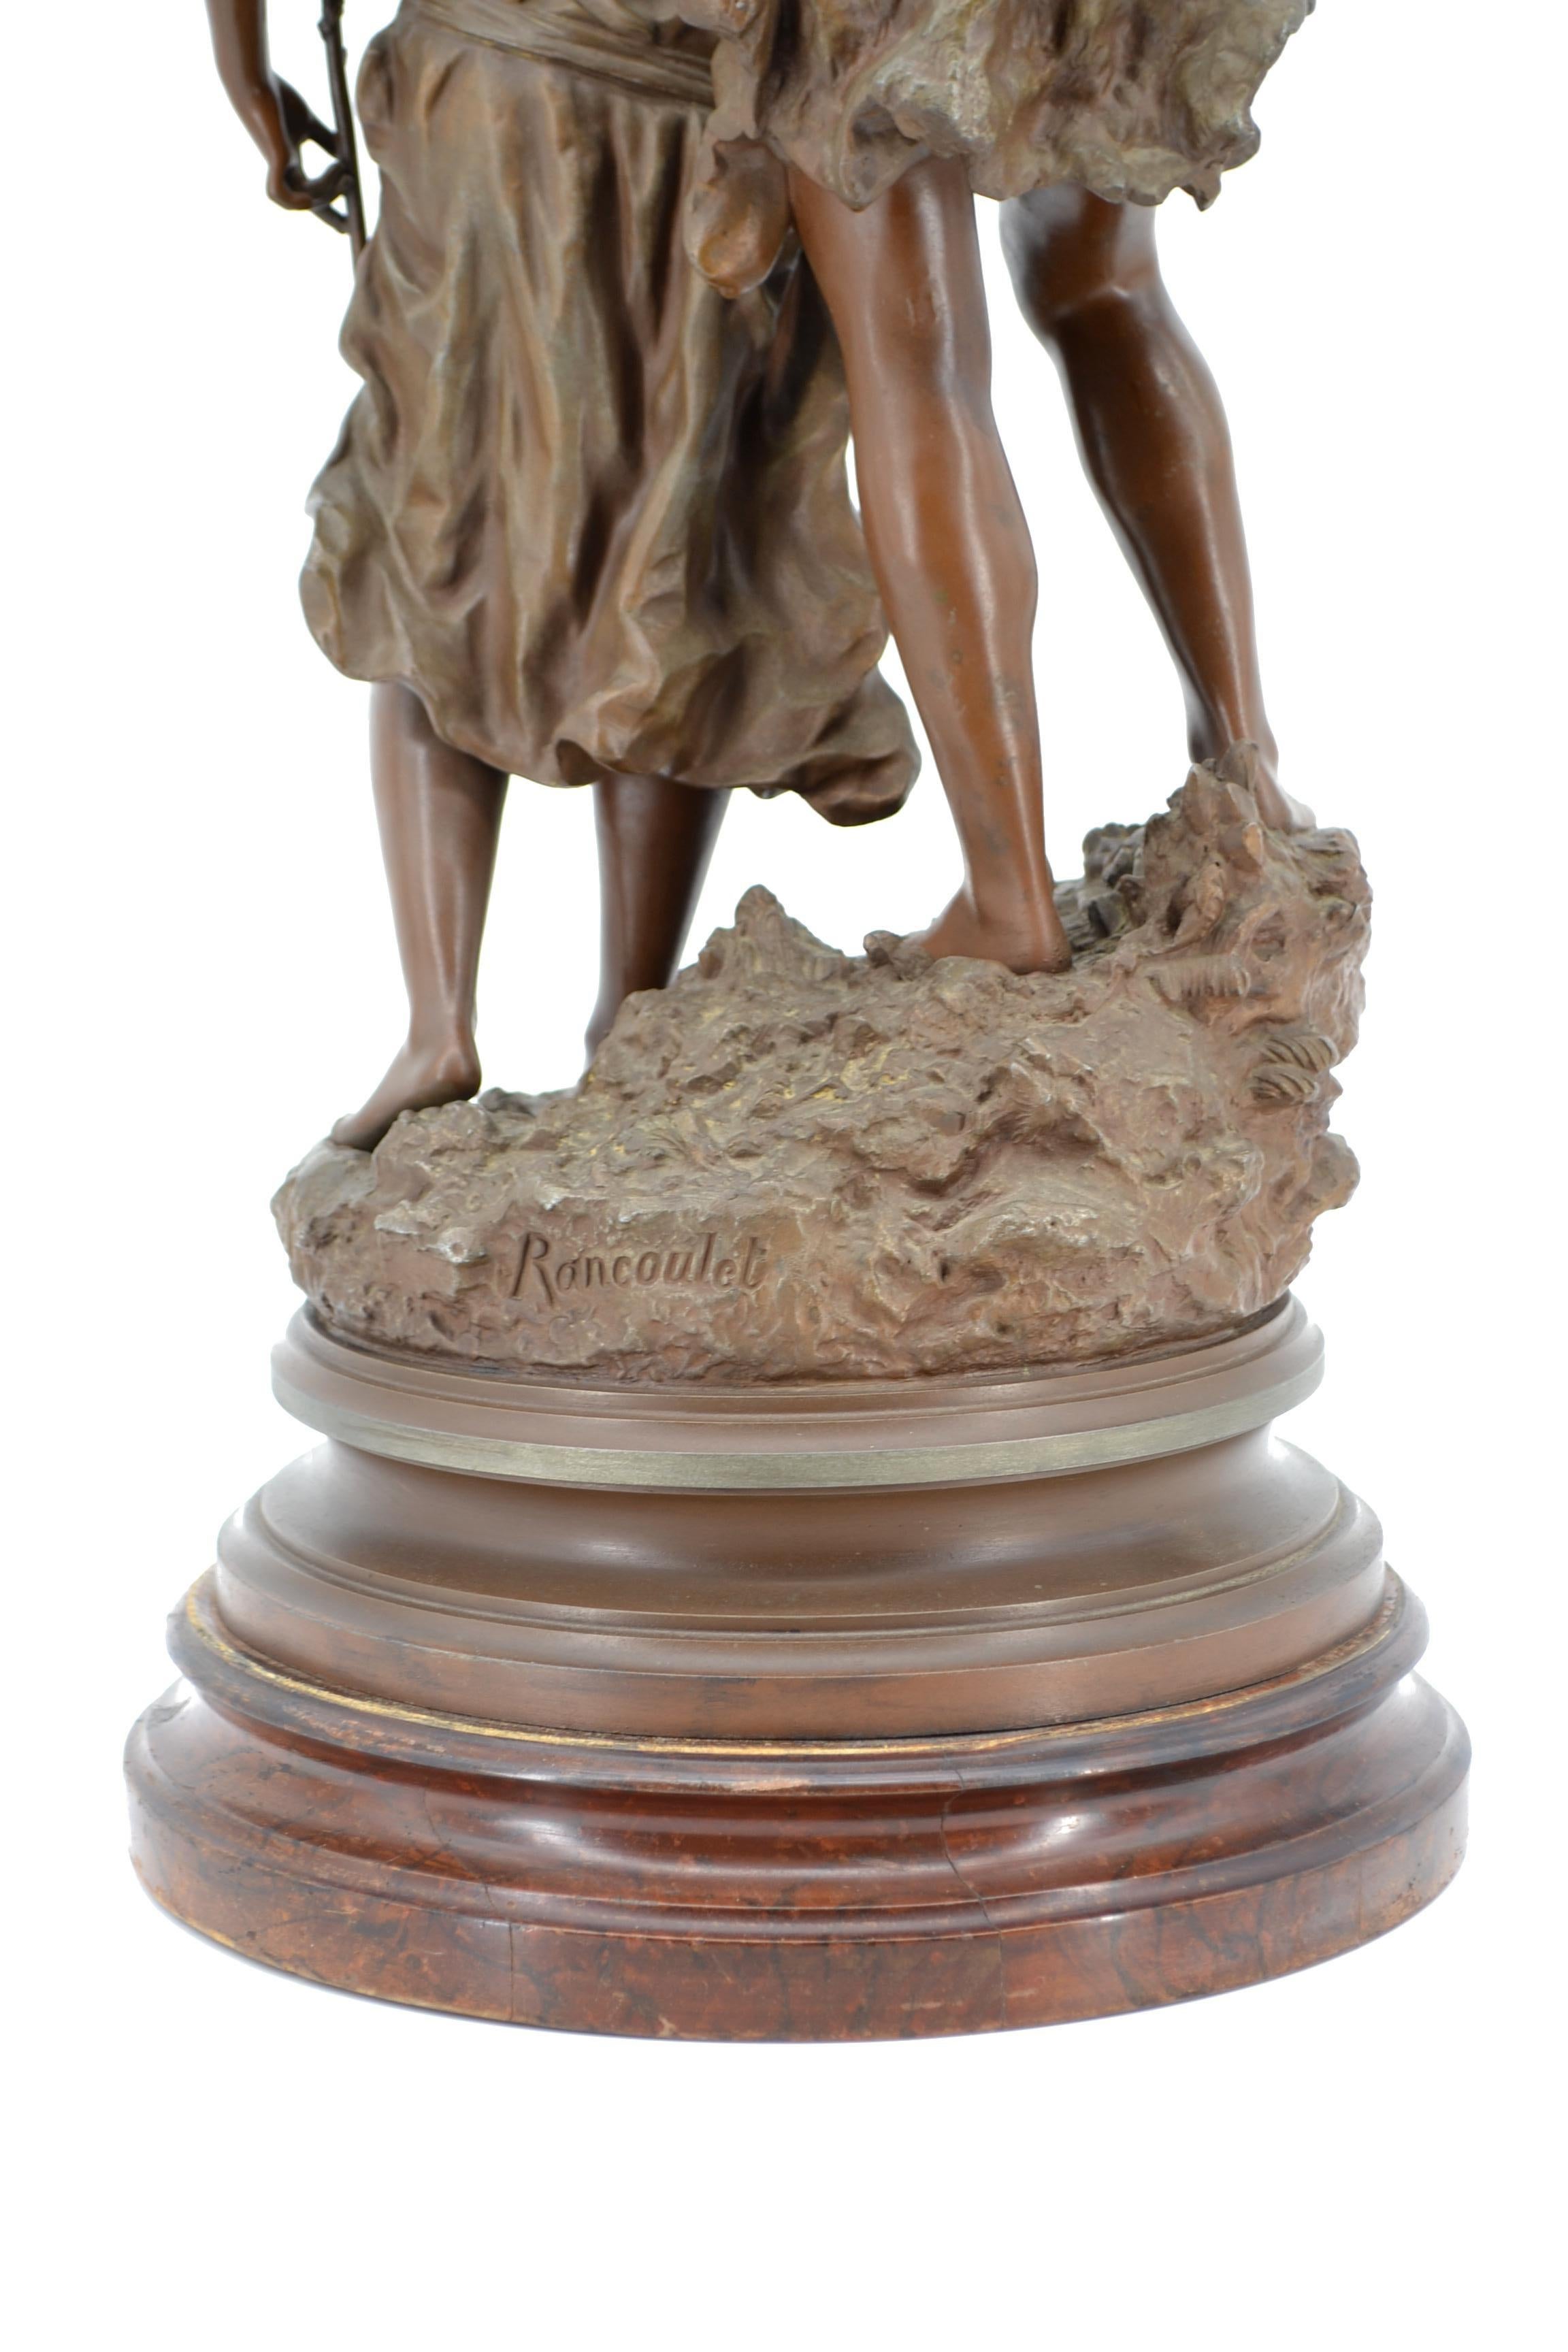 Art nouveau Ernest Rancoulet - Groupe de sculptures d'un homme et d'une femme L' Age d'or 1870 - 1915 en vente